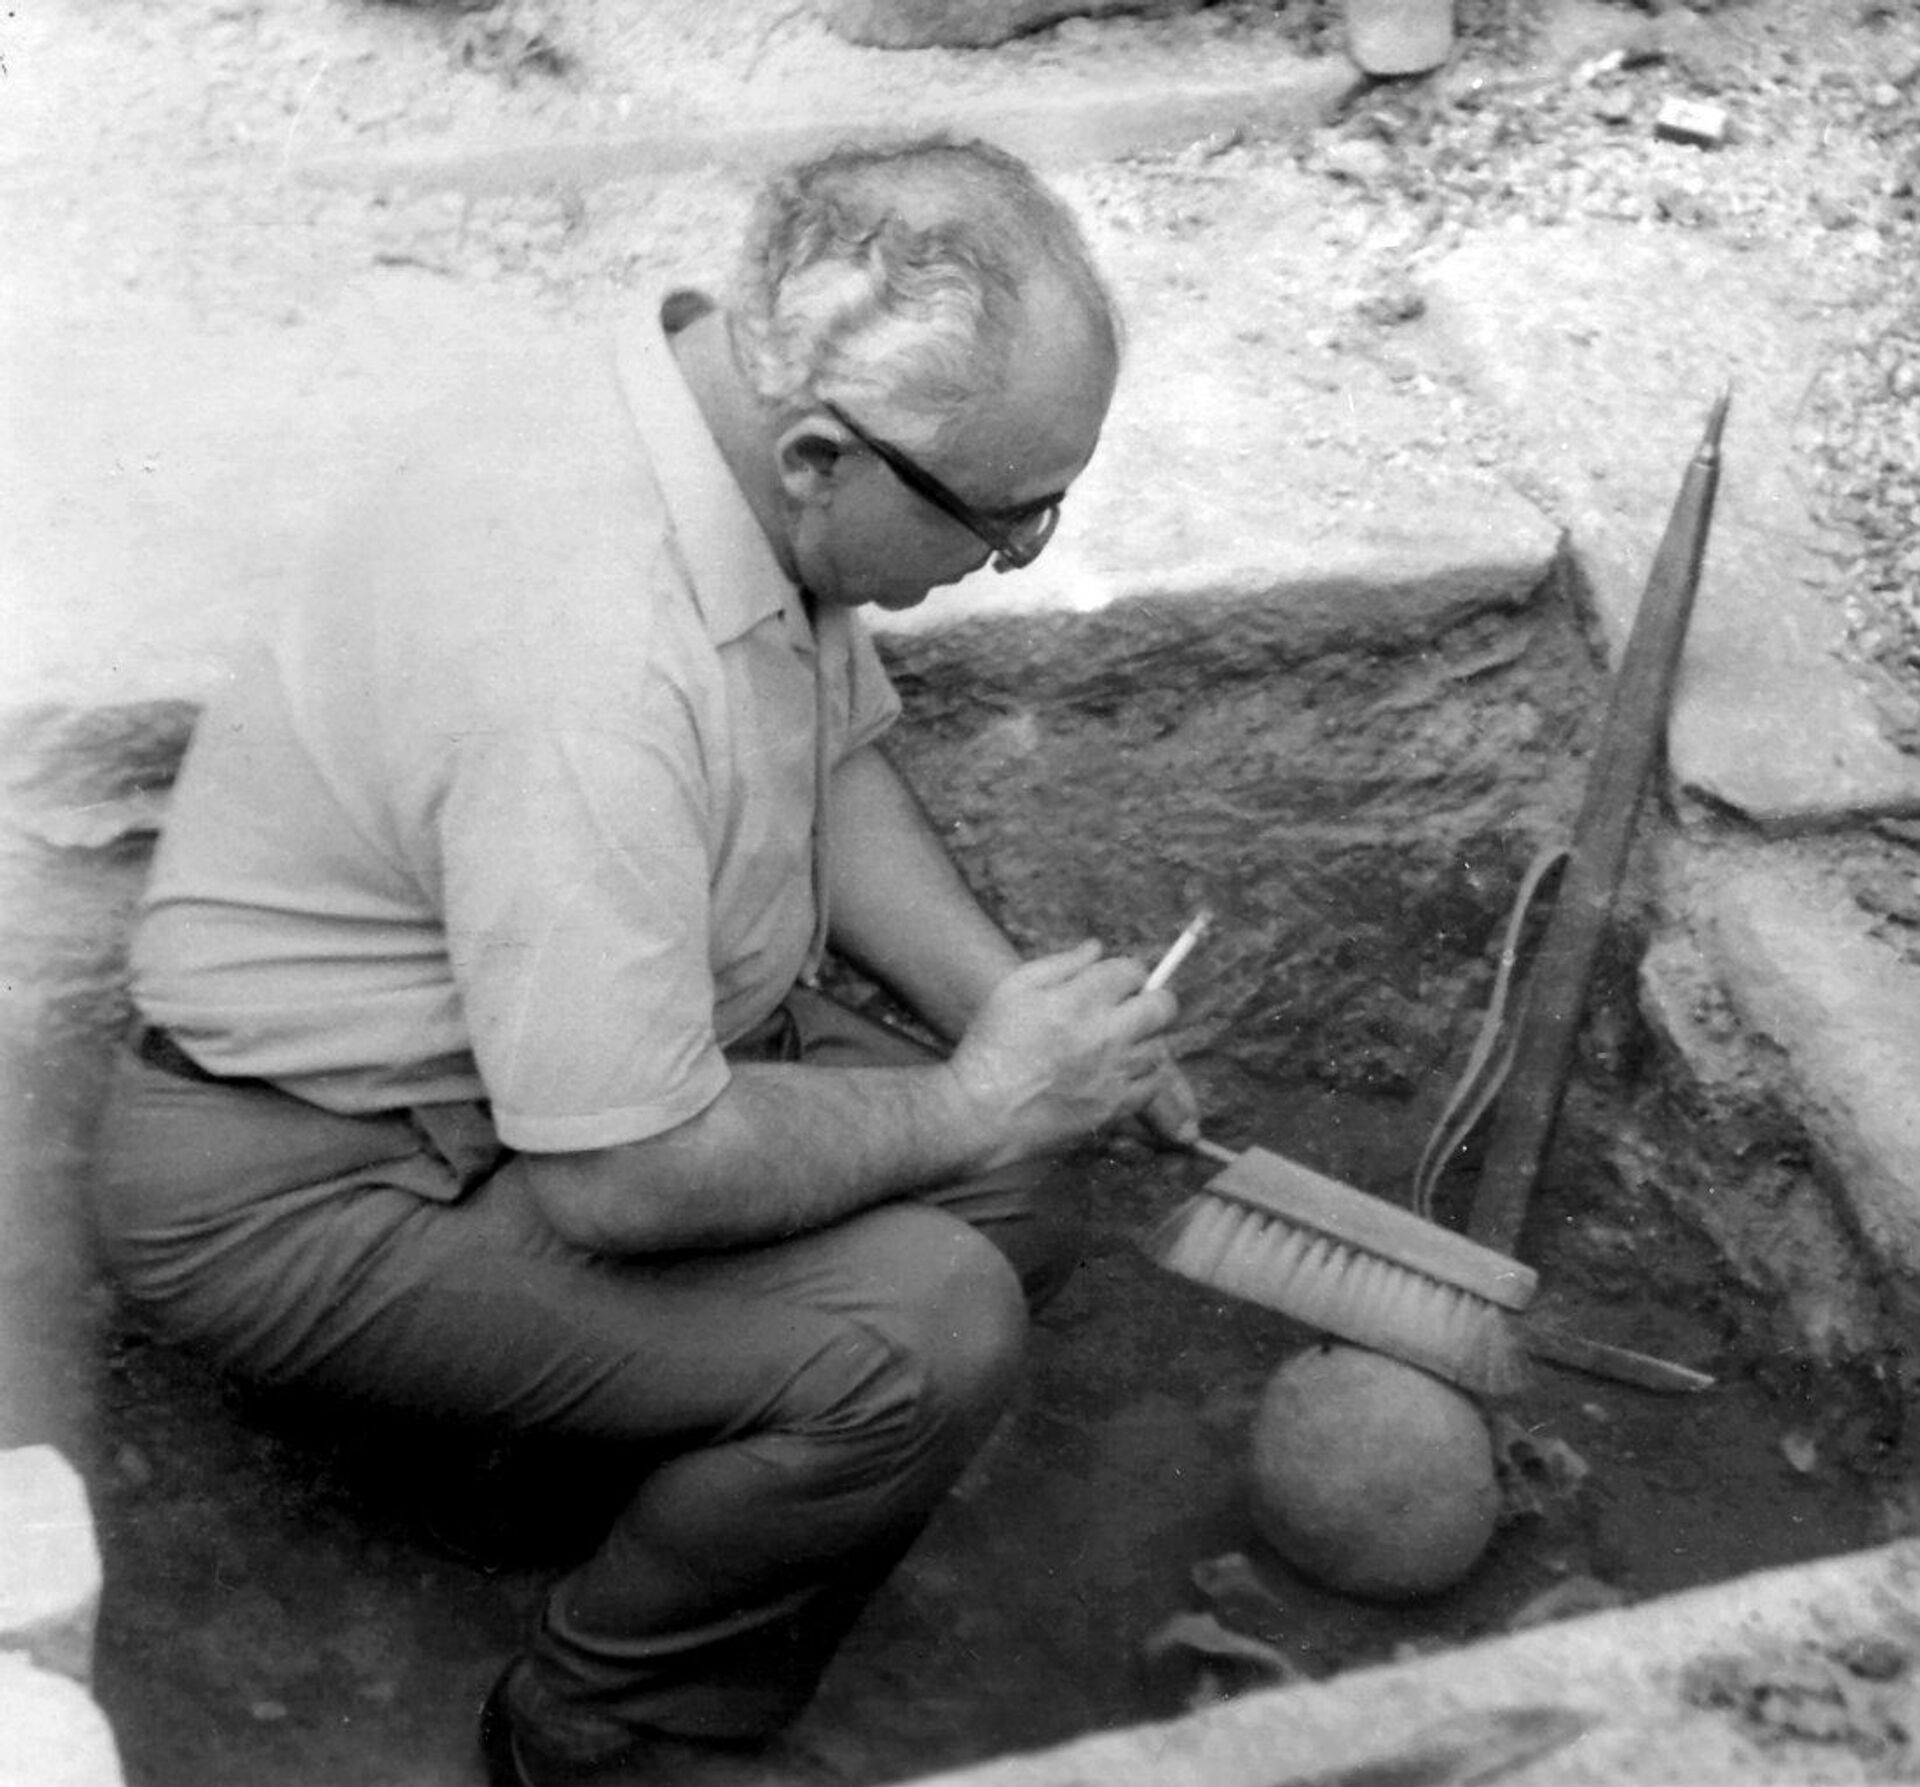 Как выглядели наши далекие предки, и как они делали трепанацию черепа - находки в Лчашене - Sputnik Армения, 1920, 09.05.2021